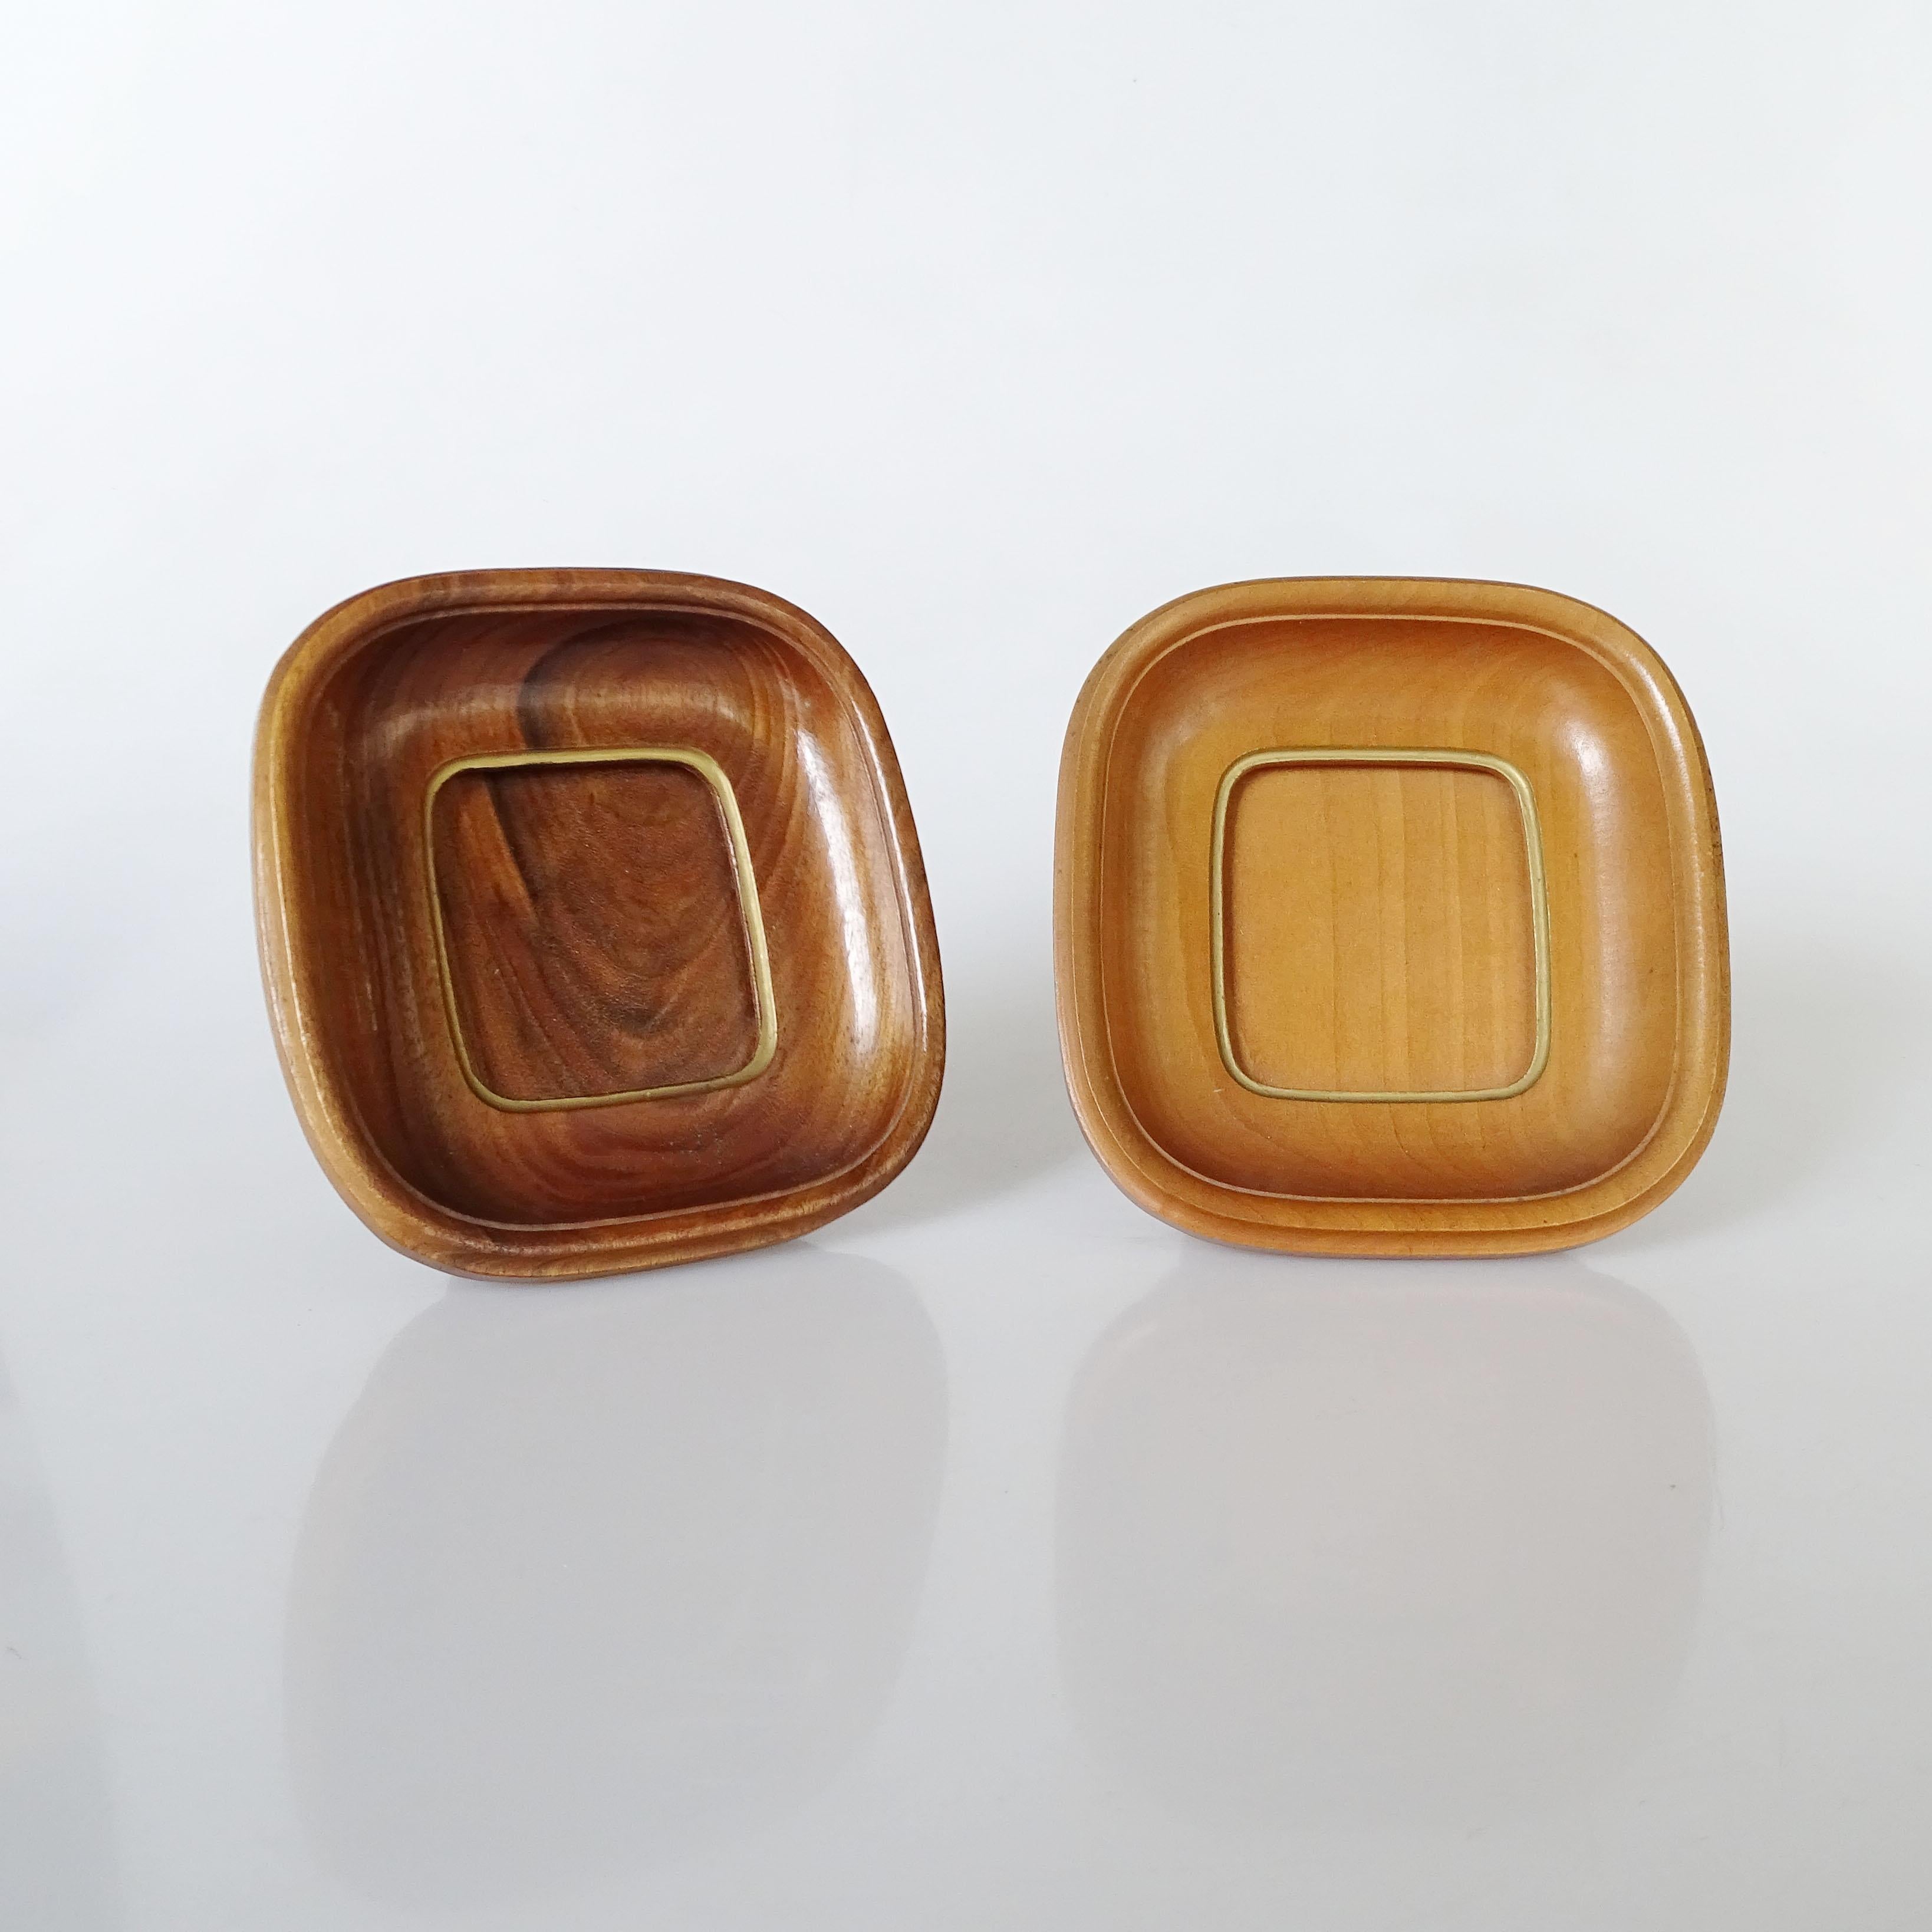 Prächtiges Paar kleiner italienischer Tischgestelle, 1940er Jahre
Zwei verschiedene Hölzer 